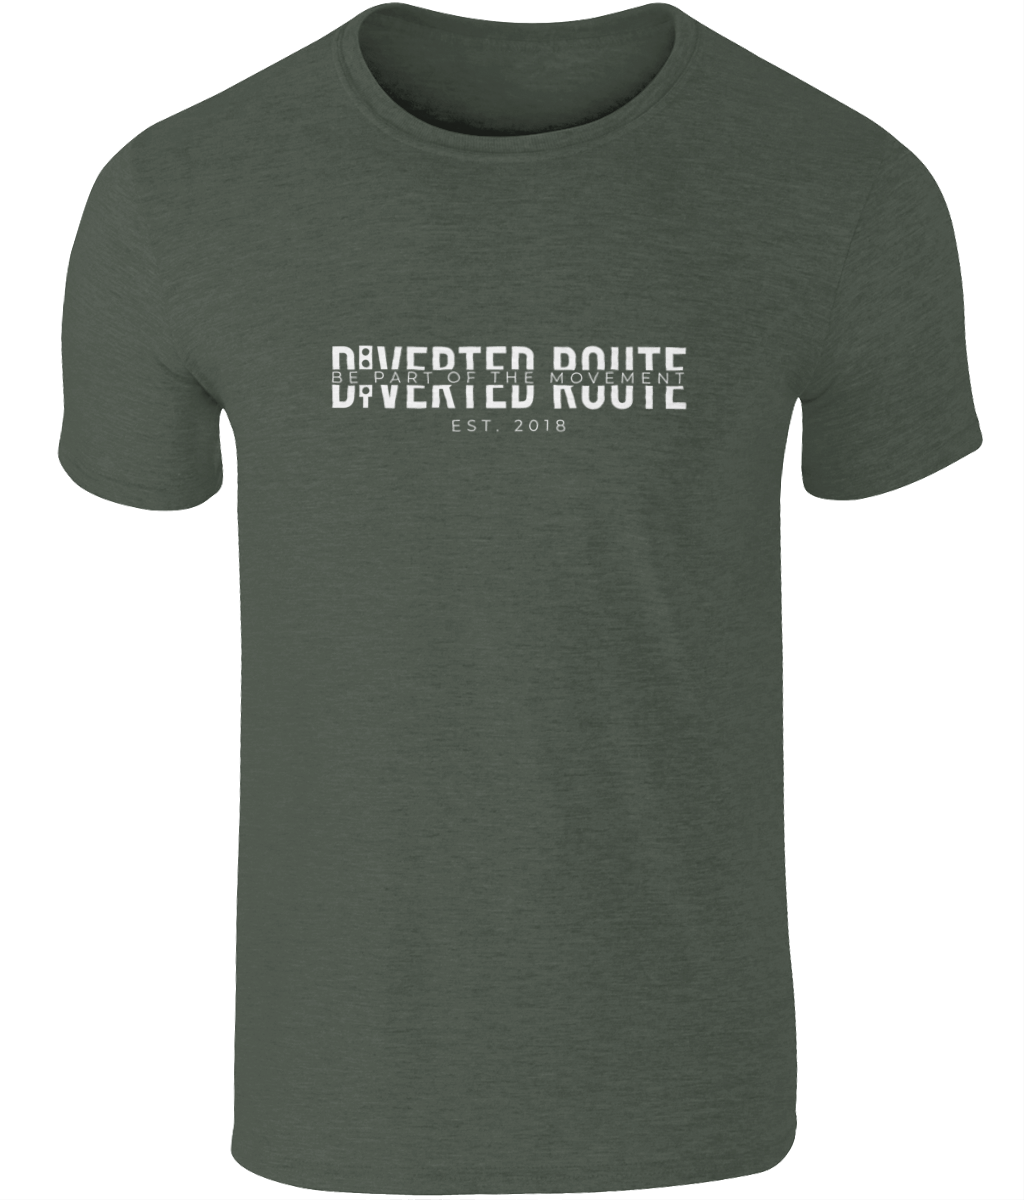 Diverted Route Ltd Unisex Adult Split Tshirt